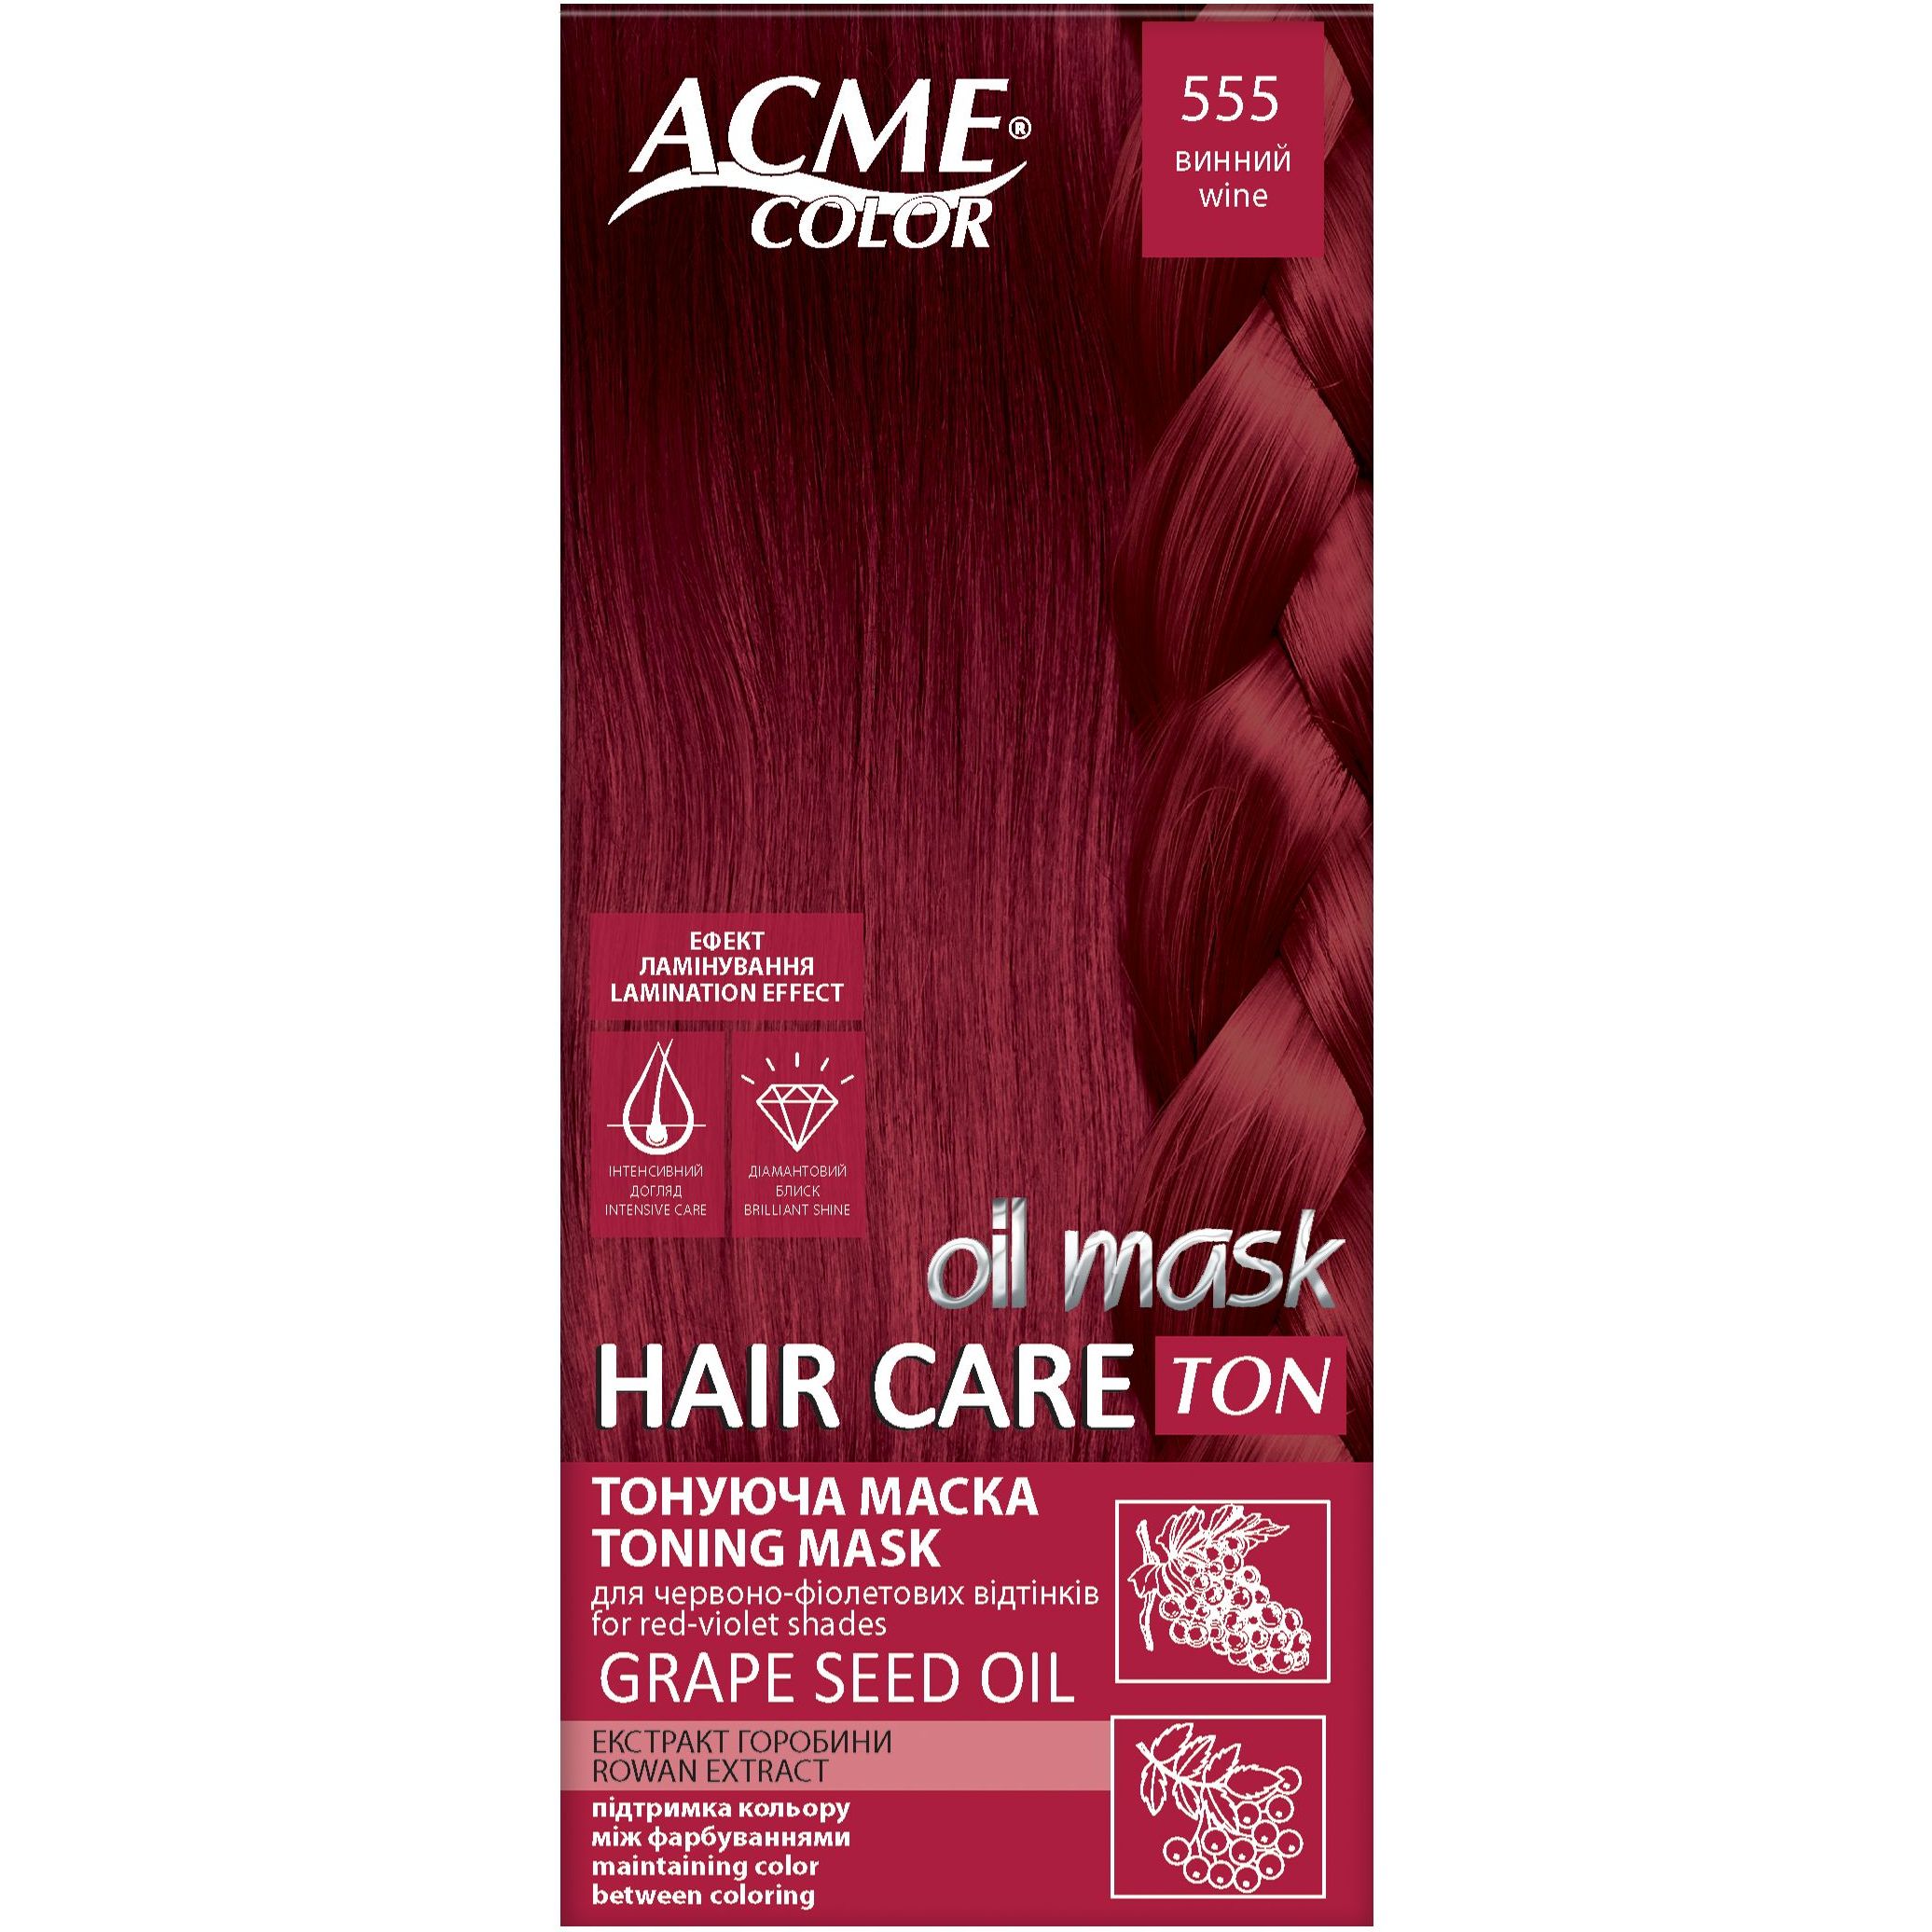 Тонуюча маска для волосся Acme Color Hair Care Ton oil mask, відтінок 555, винний, 30 мл - фото 1